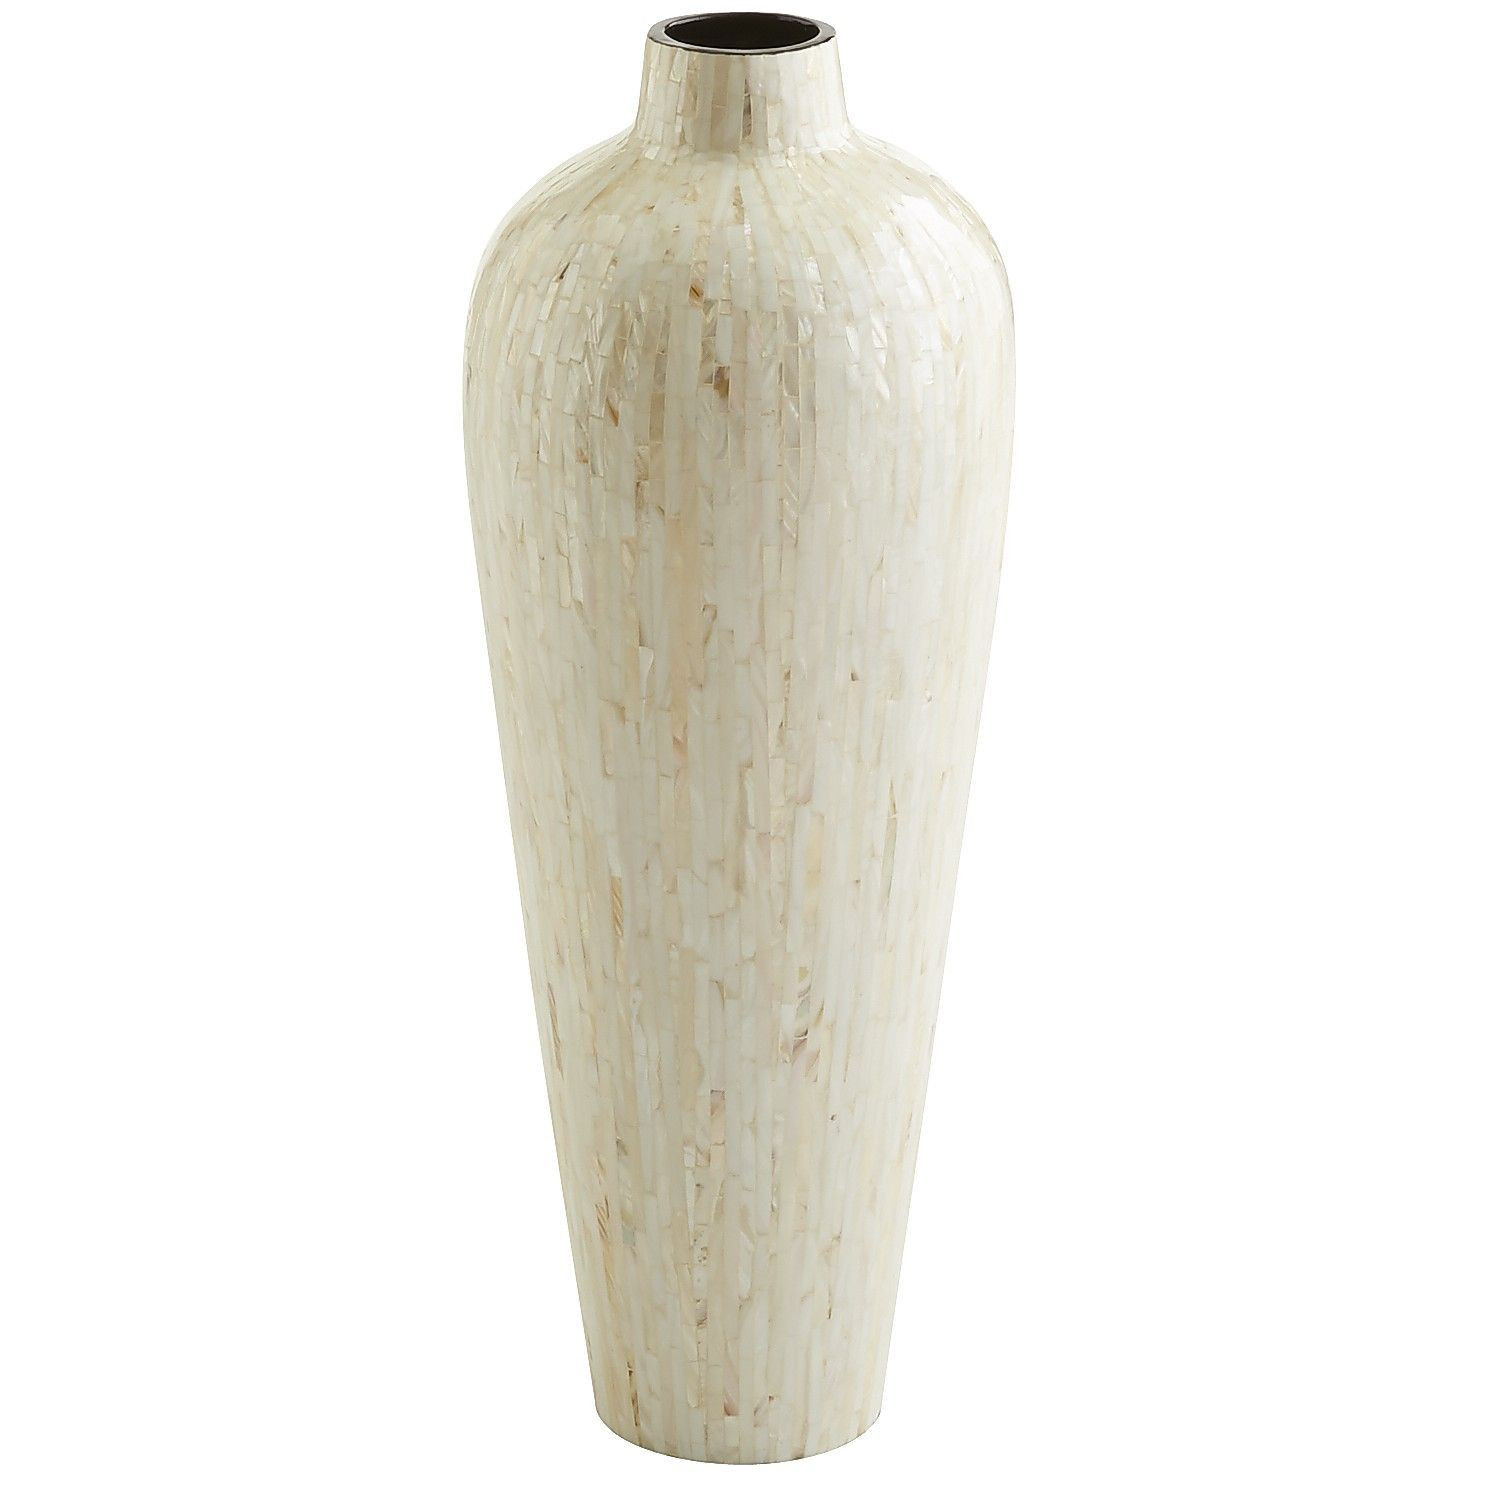 27 Wonderful Clay Floor Vase 2024 free download clay floor vase of ivory mother of pearl floor vase decor vases pinterest throughout ivory mother of pearl floor vase